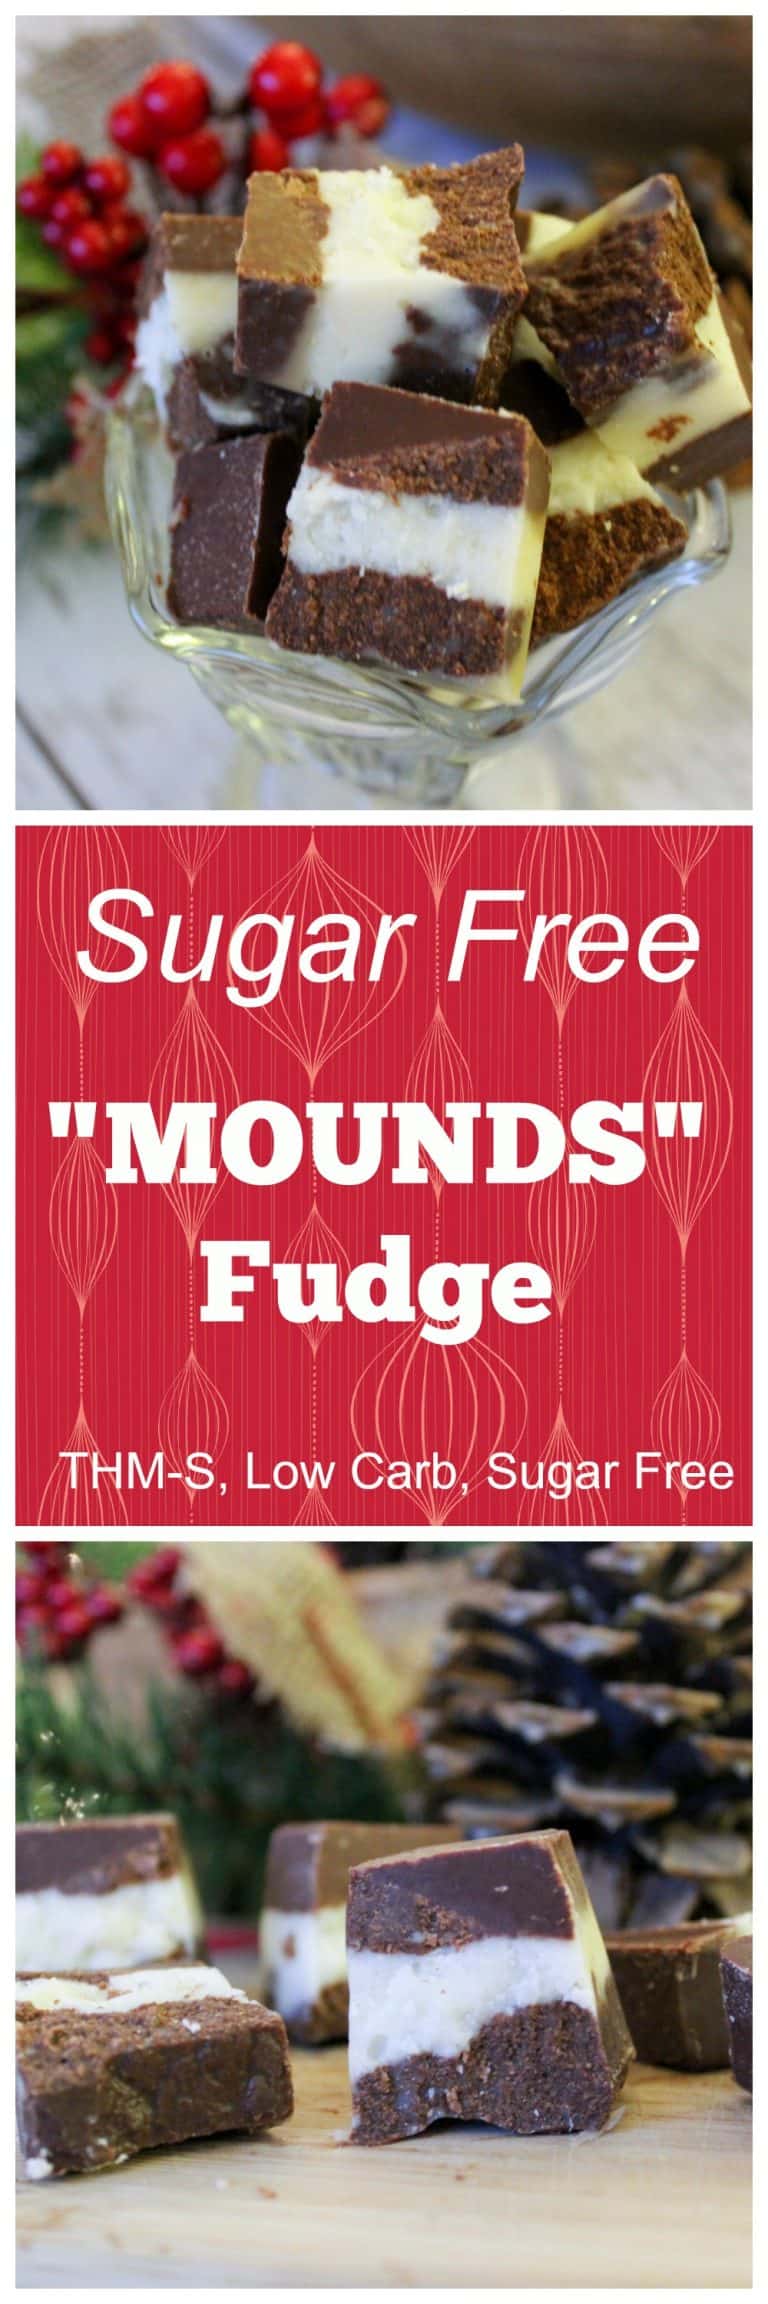 Sugar Free "Mounds" Fudge (THM-S, Low Carb, Sugar Free)